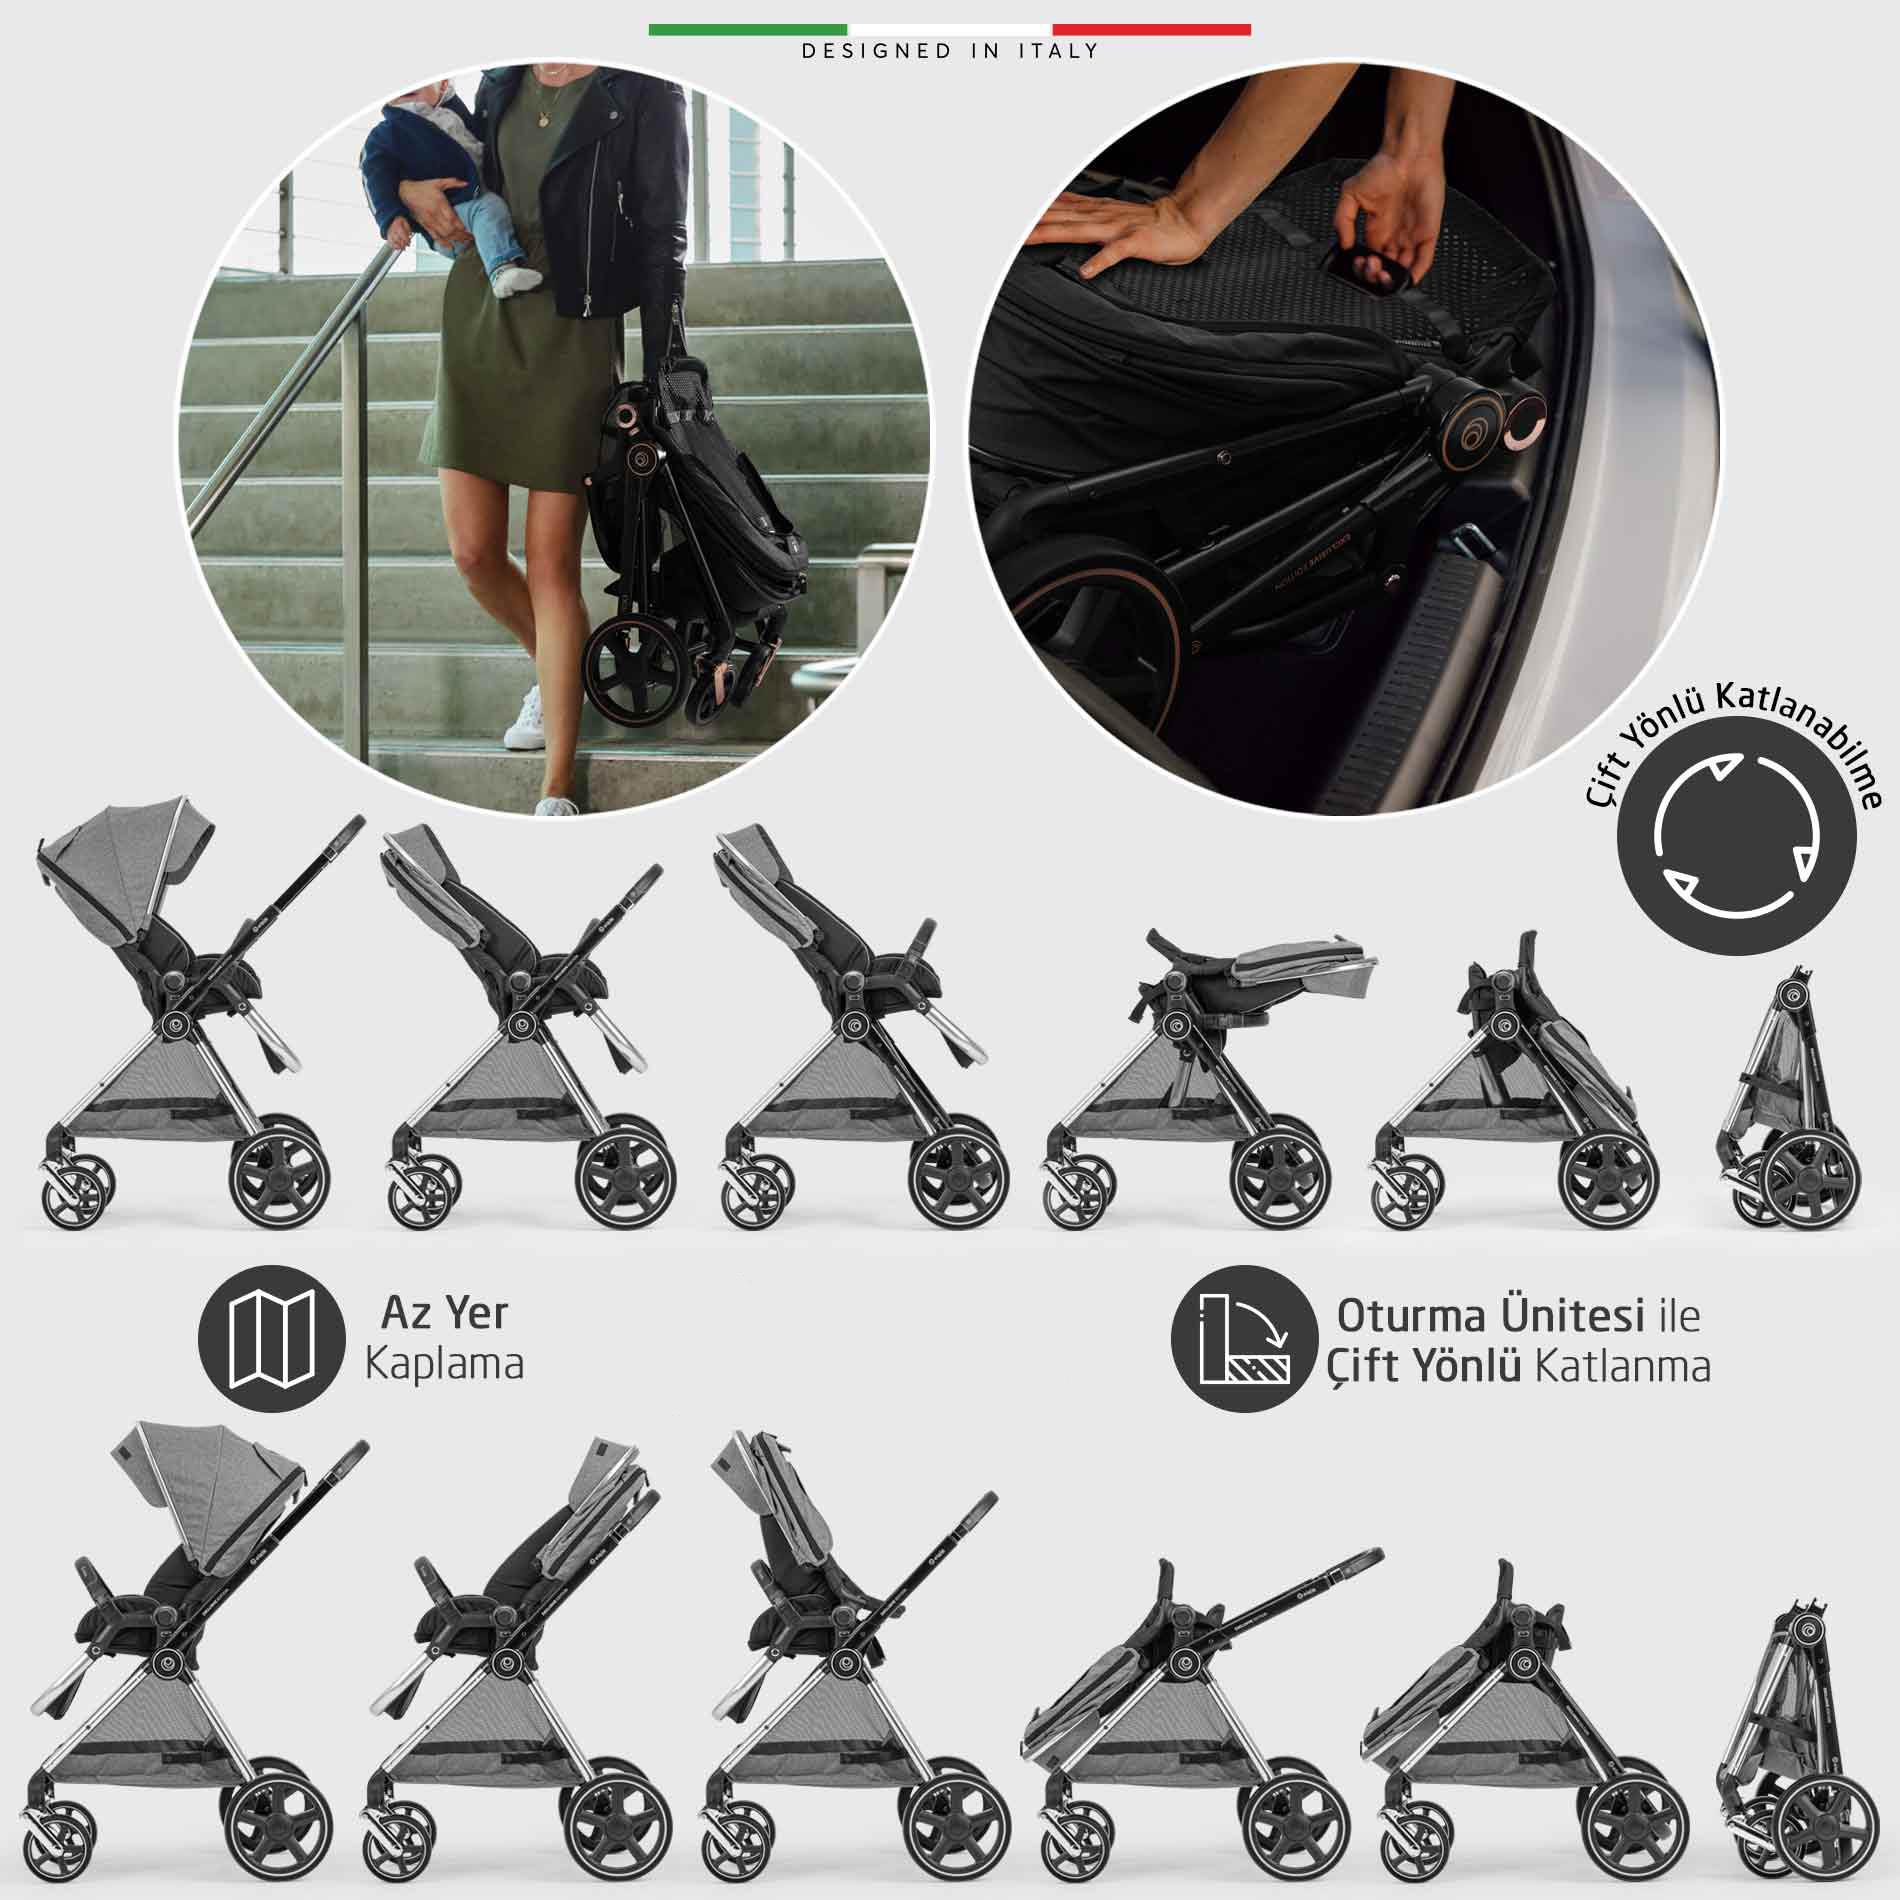 Elele Mido 2 Travel Sistem Bebek Arabası Silver Kahverengi - Elele Baby